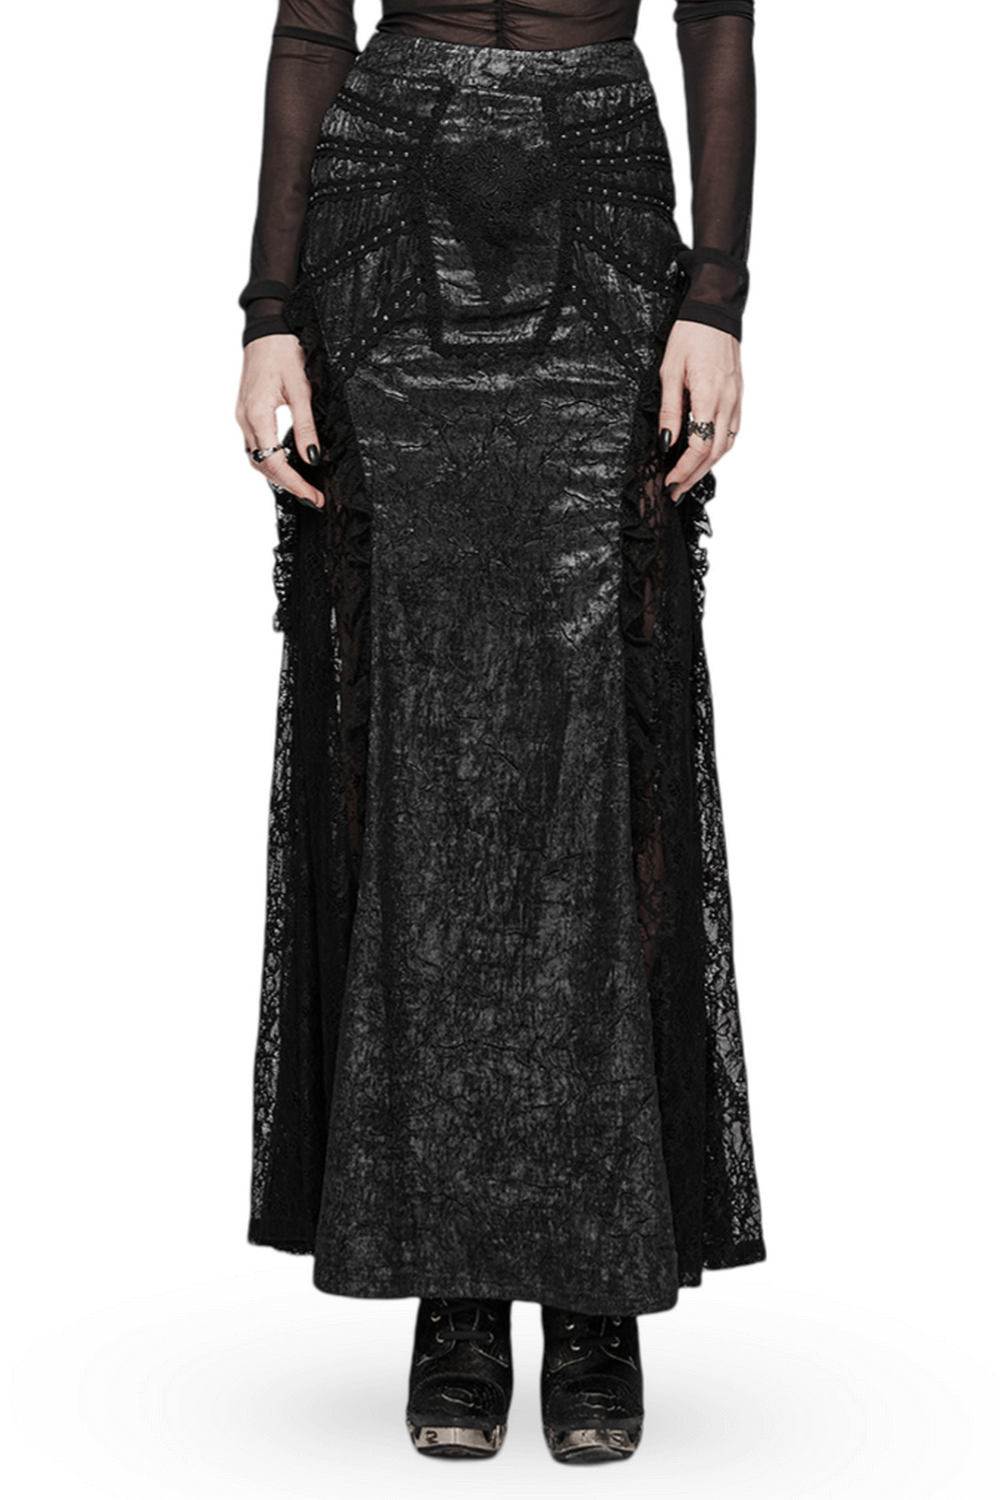 Falda larga con volantes y encaje texturizado gótico para mujer